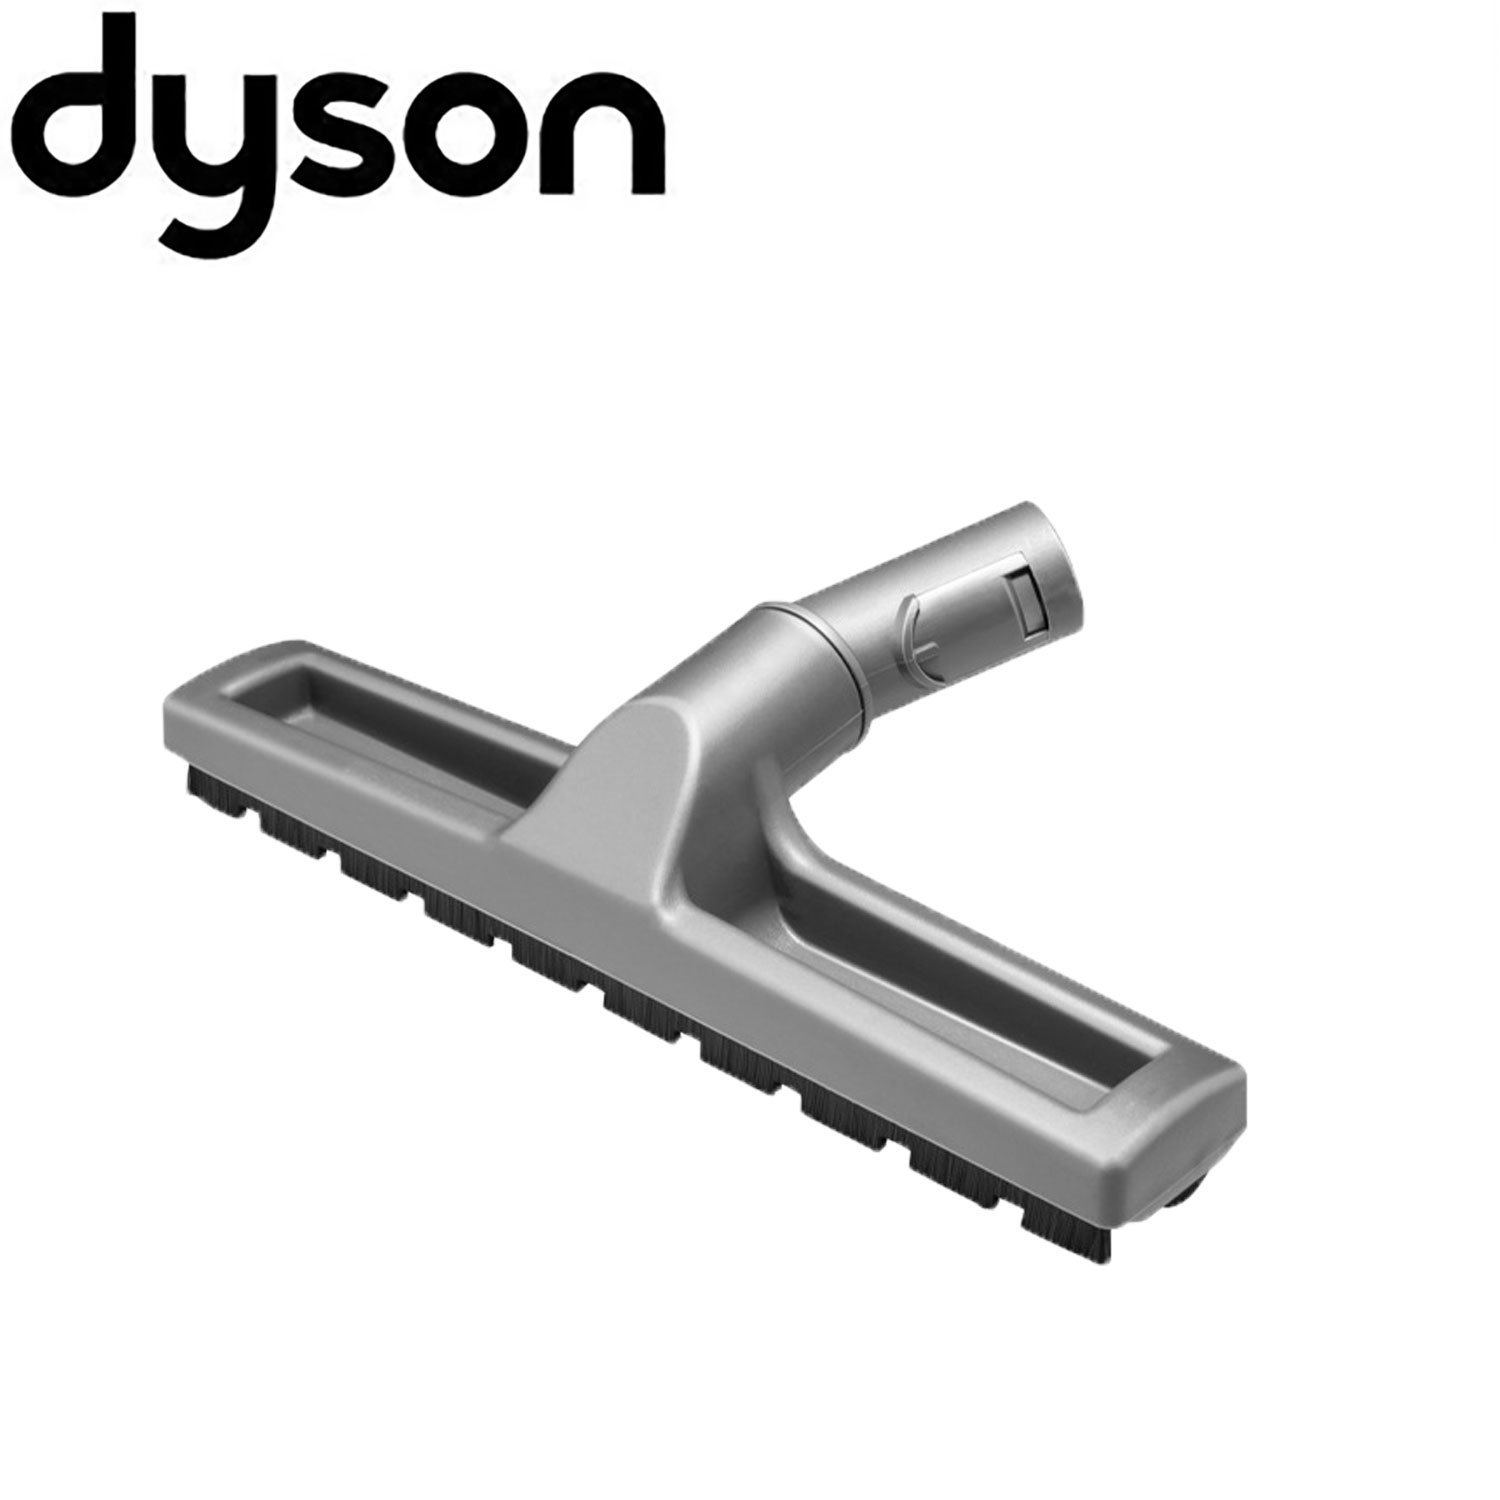 ダイソン v6 互換 ハードフロアツール dyson dc61 dc62 dc74 | 掃除機 コードレス 部品 アタッチメント ノズル パーツ 付属品 付属 ツール ハンディクリーナー 新生活 比較 一覧 おすすめ 故障 交換 スタンド